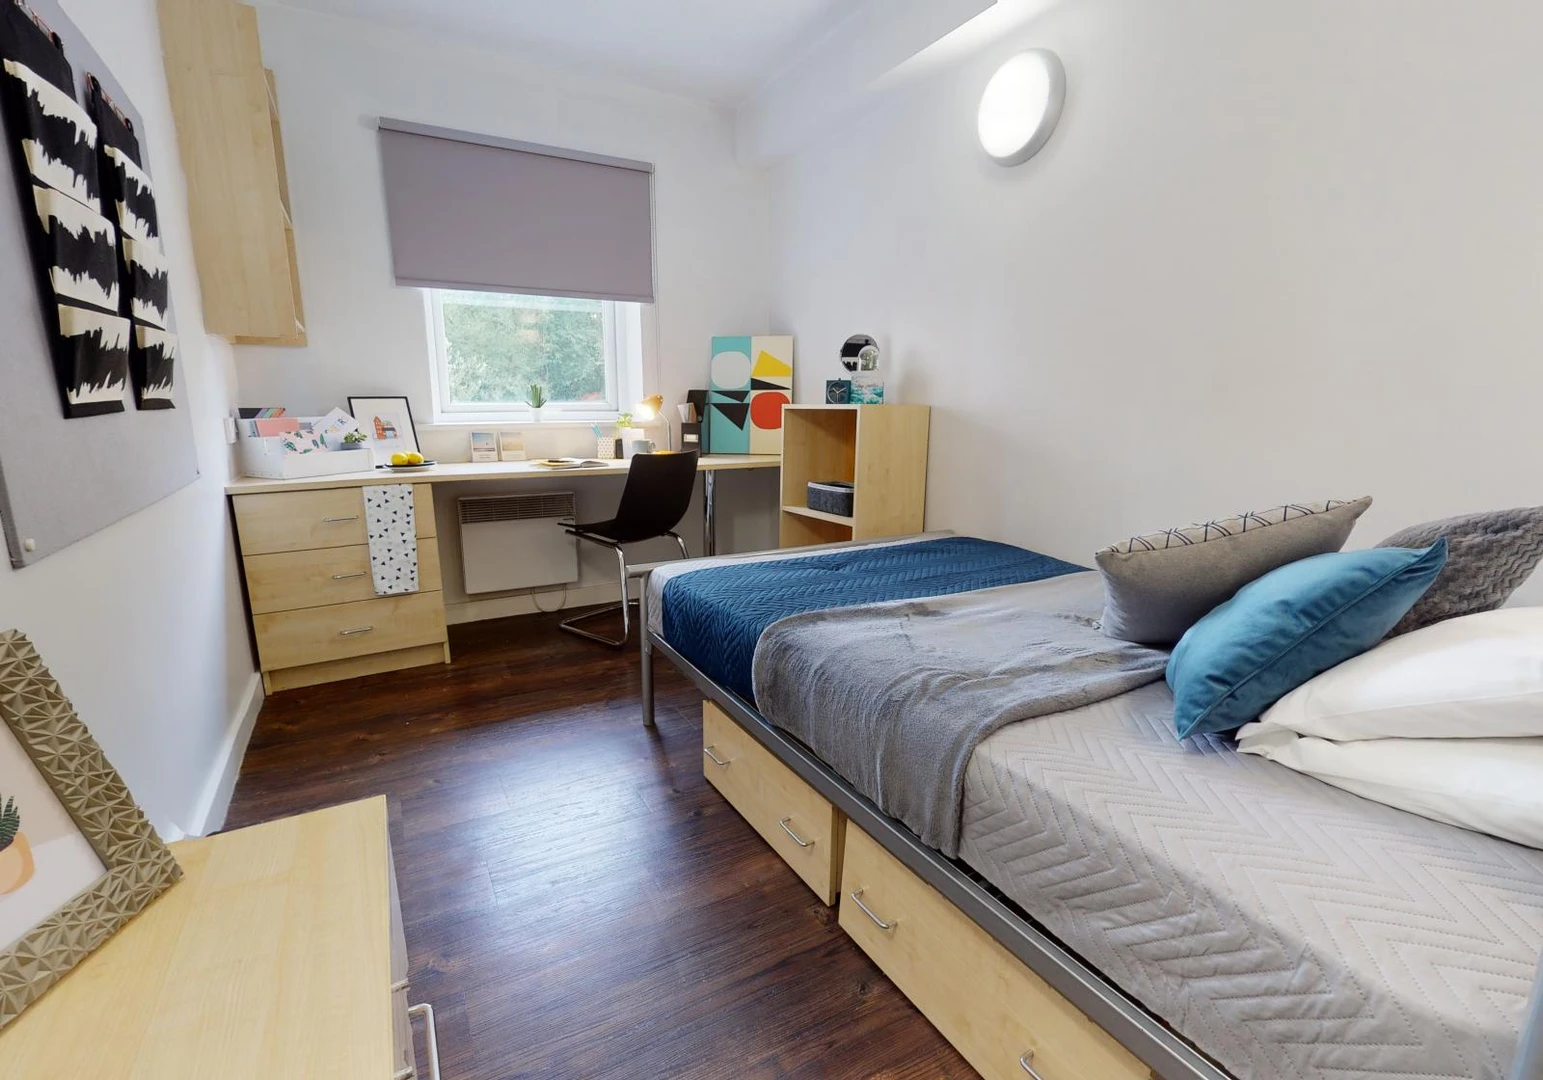 Habitación en alquiler con cama doble huddersfield